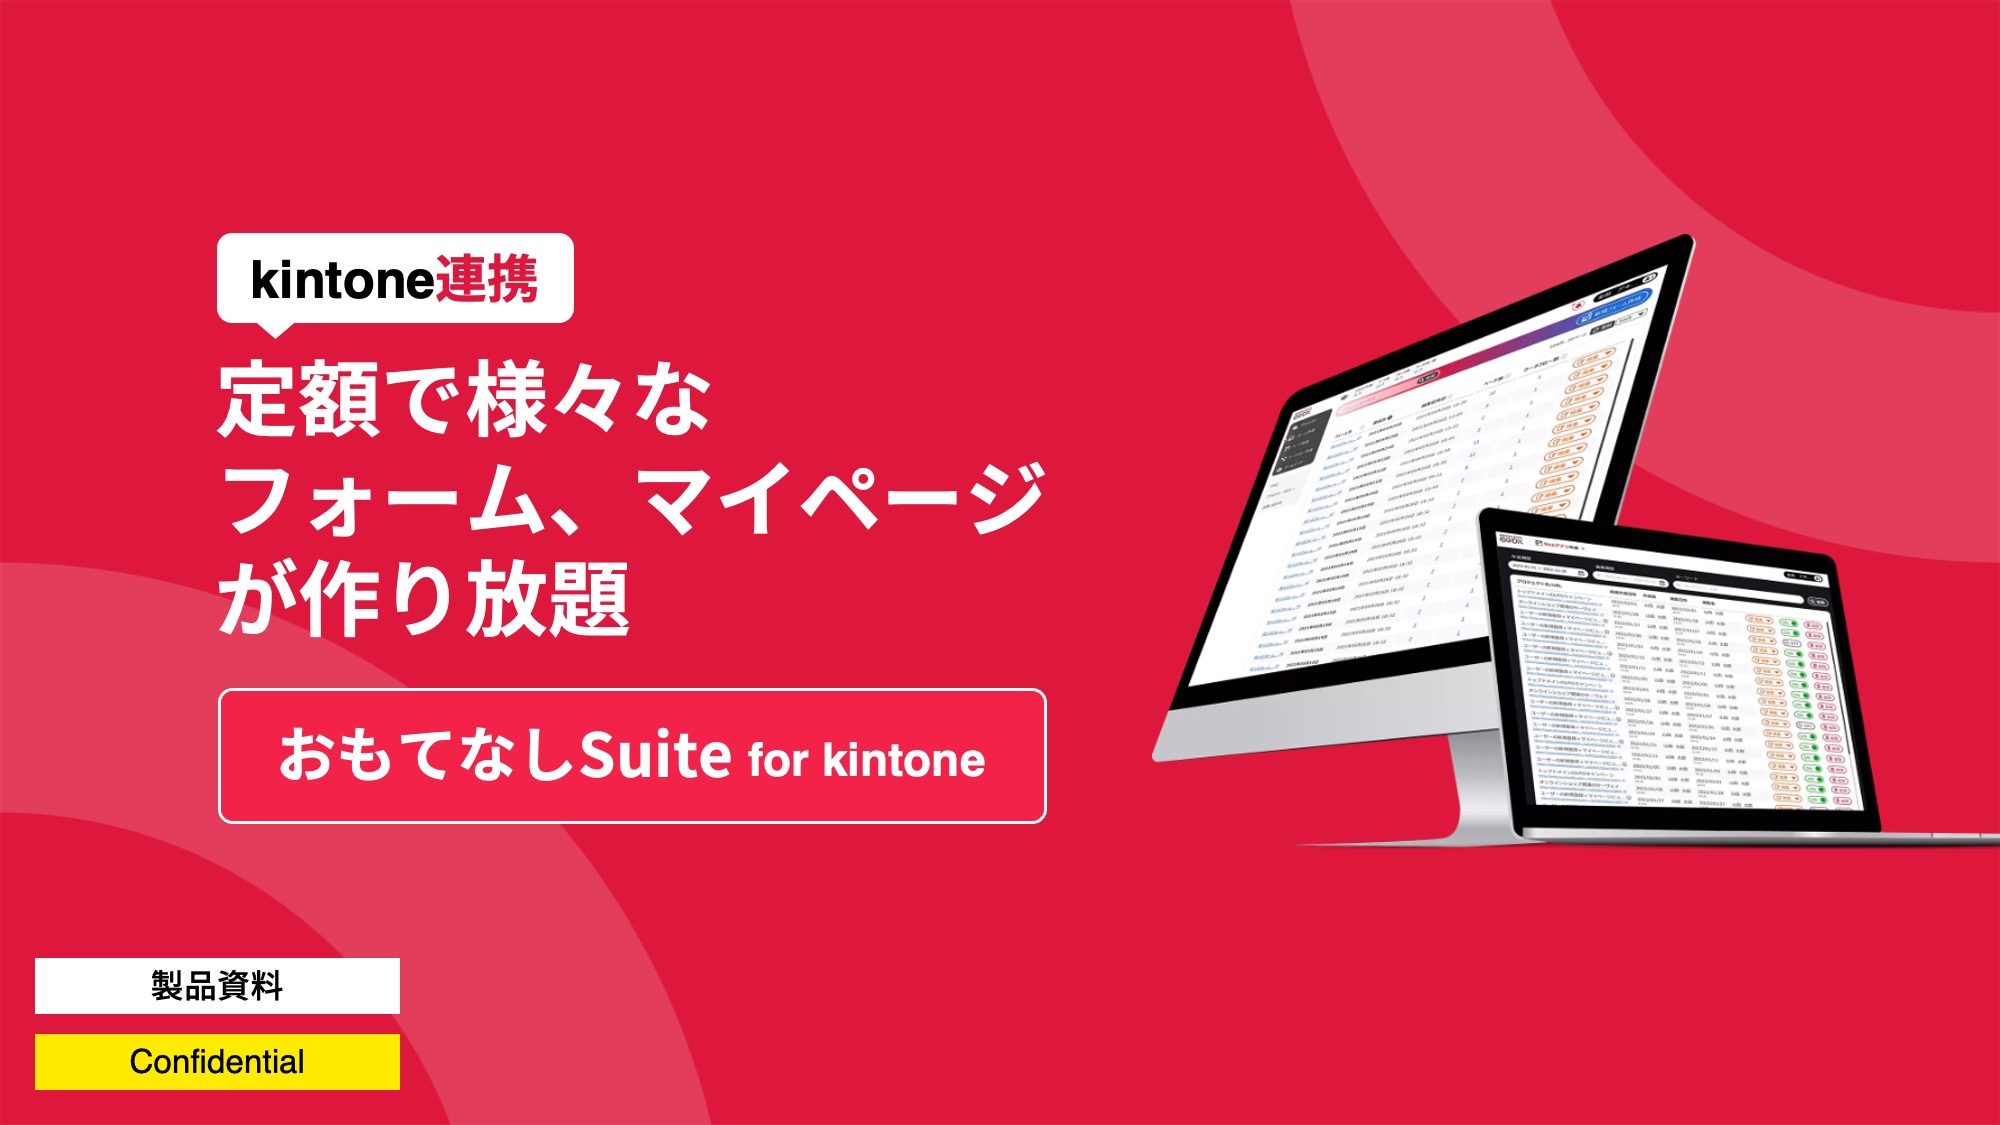 おもてなしSuite for kintone